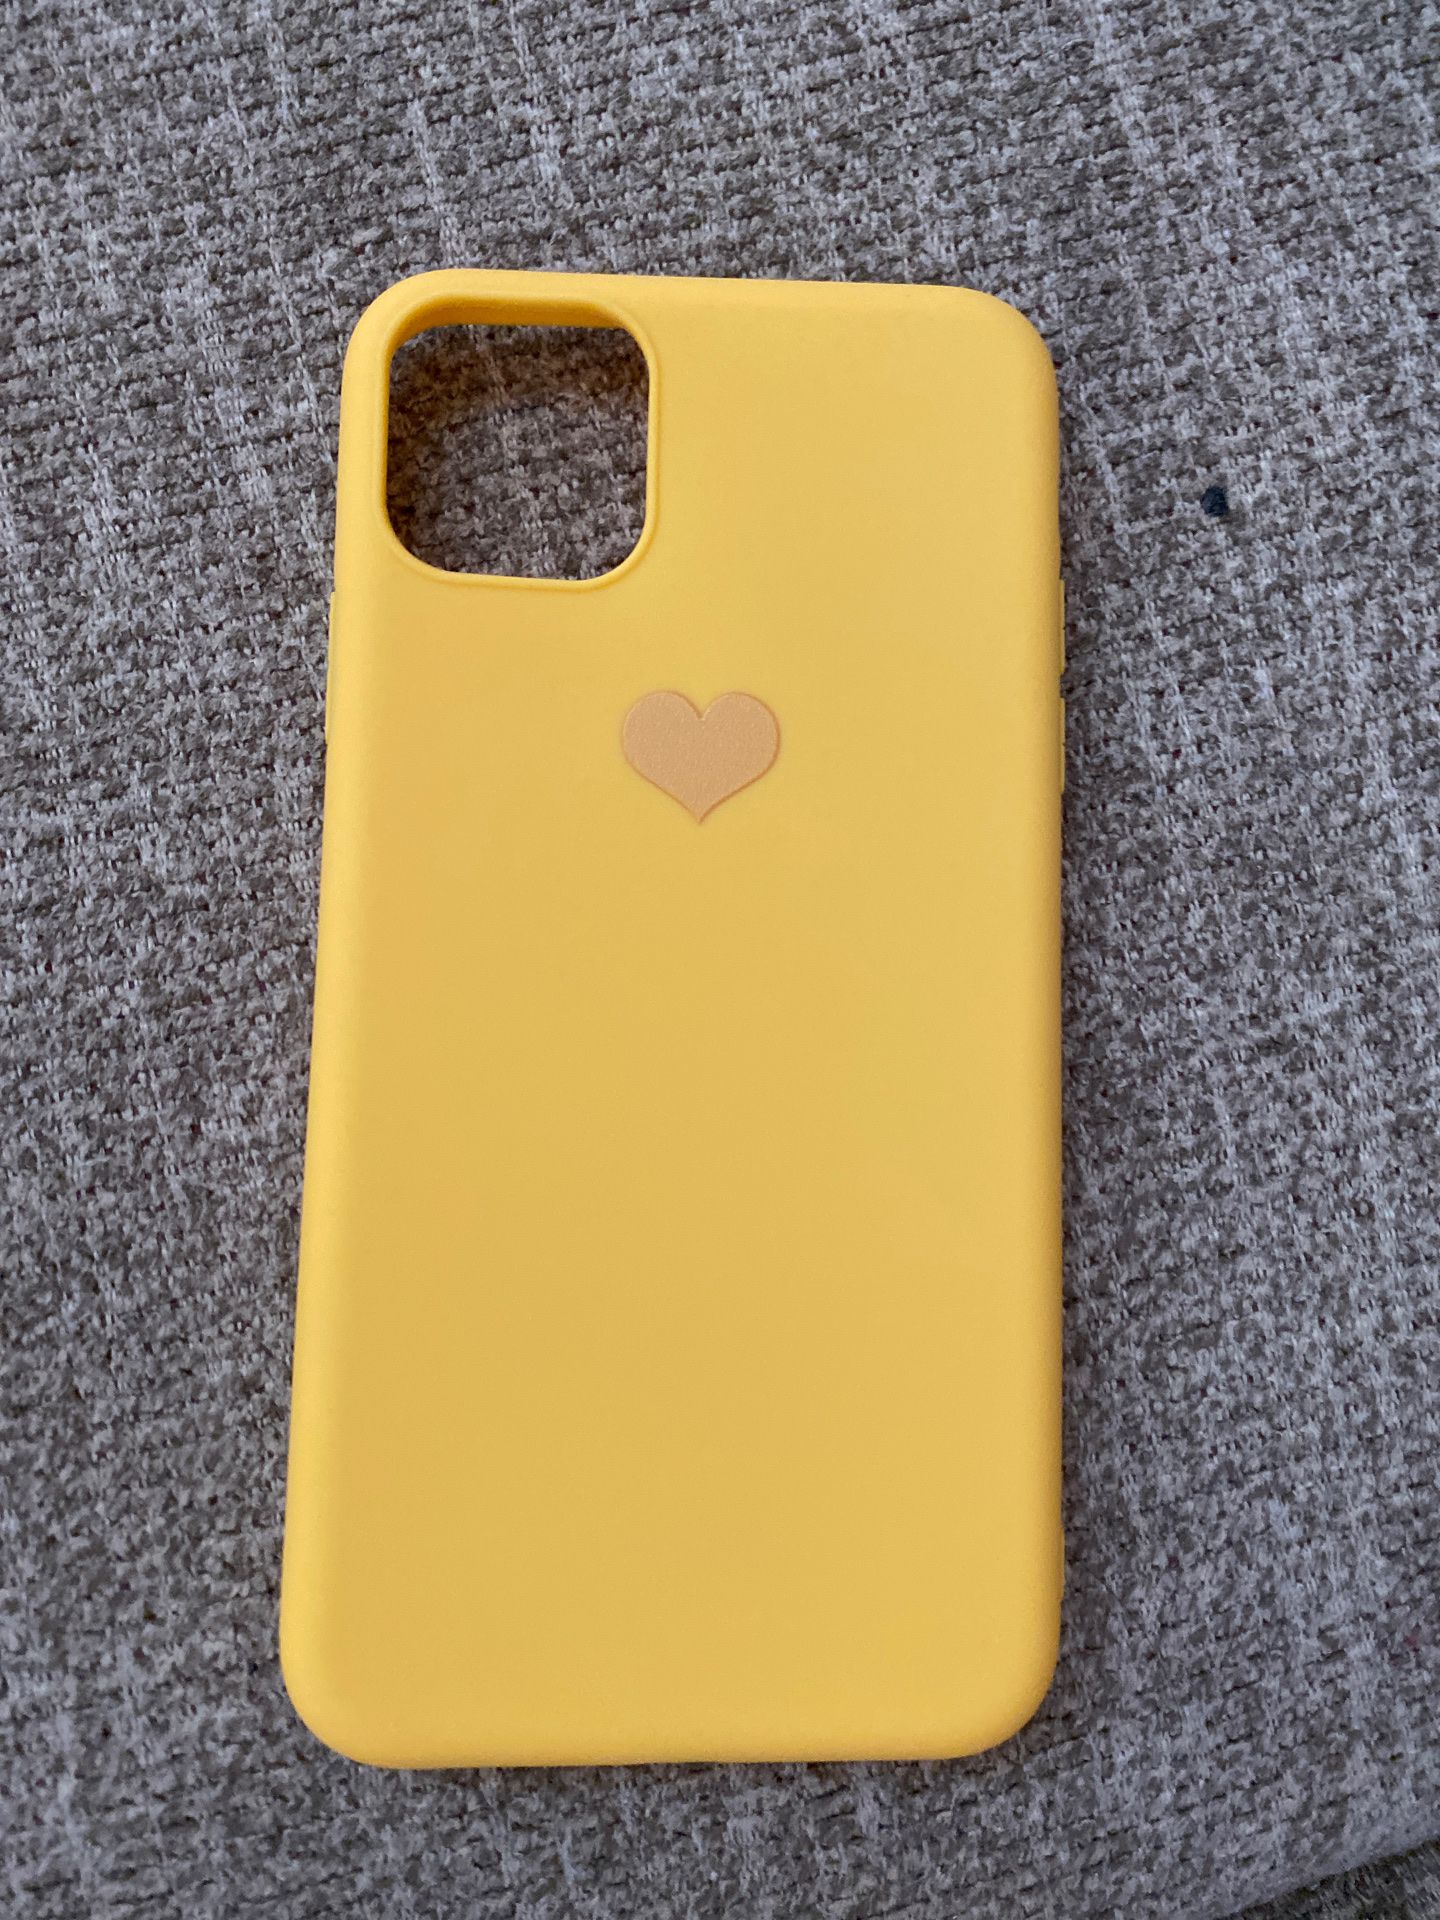 iPhone 11 pro Max case